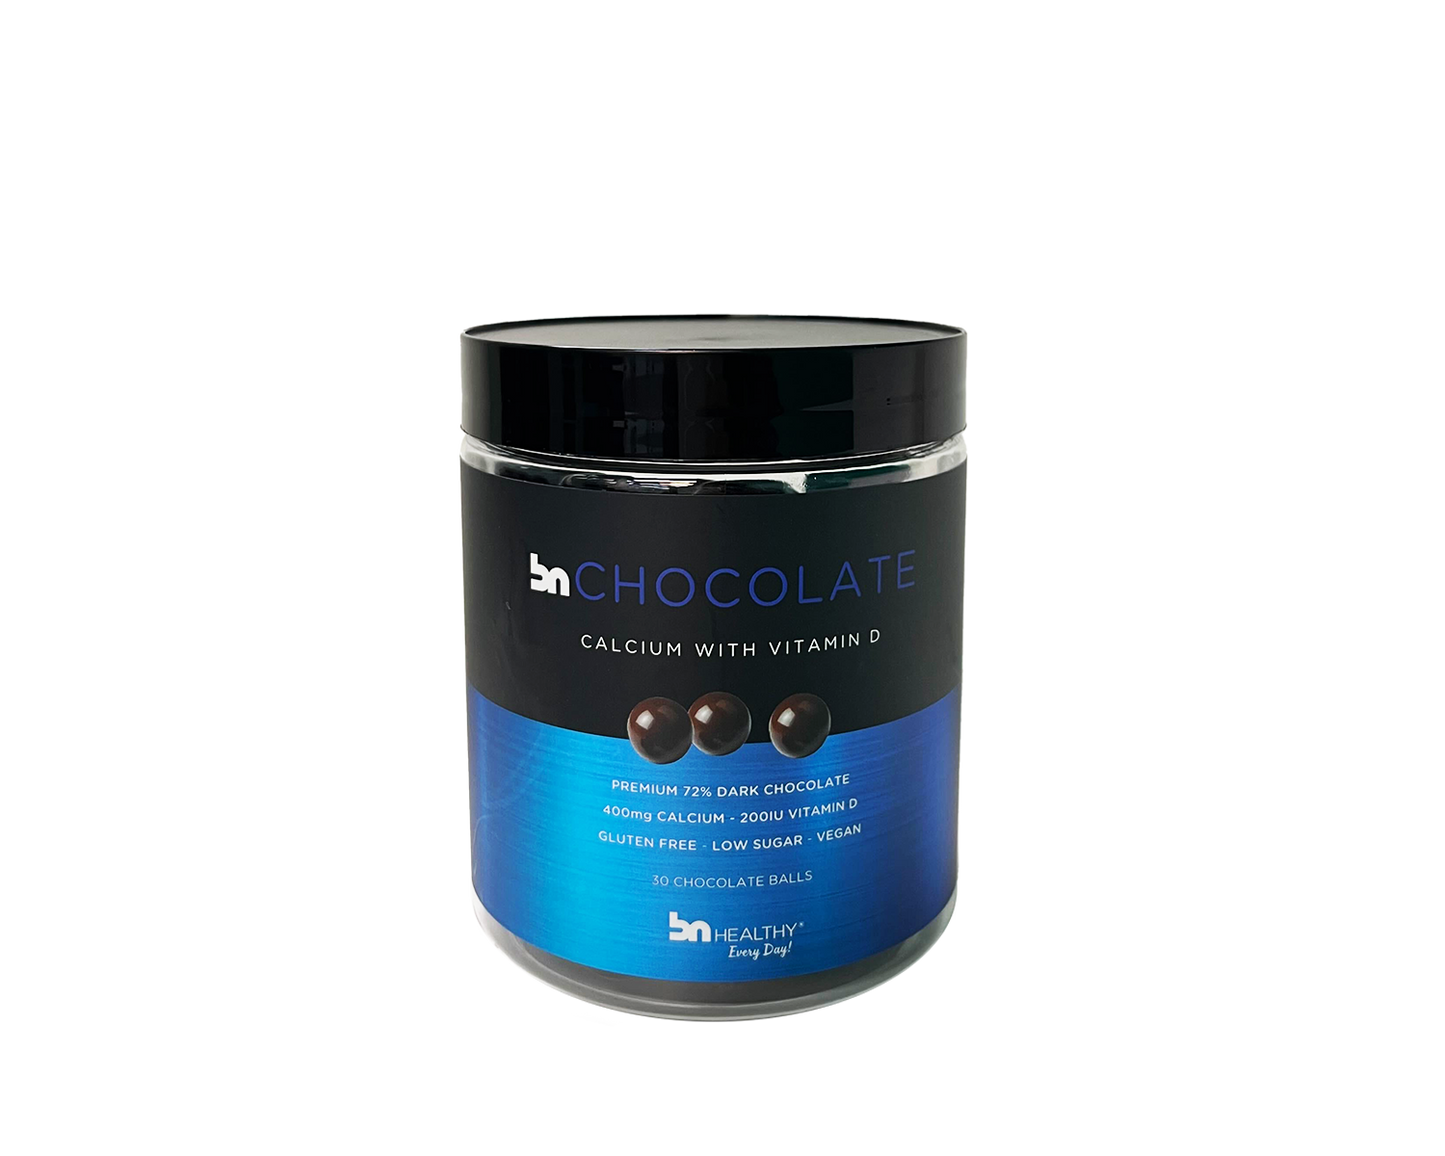 BN Chocolate - Calcium + Vitamin D